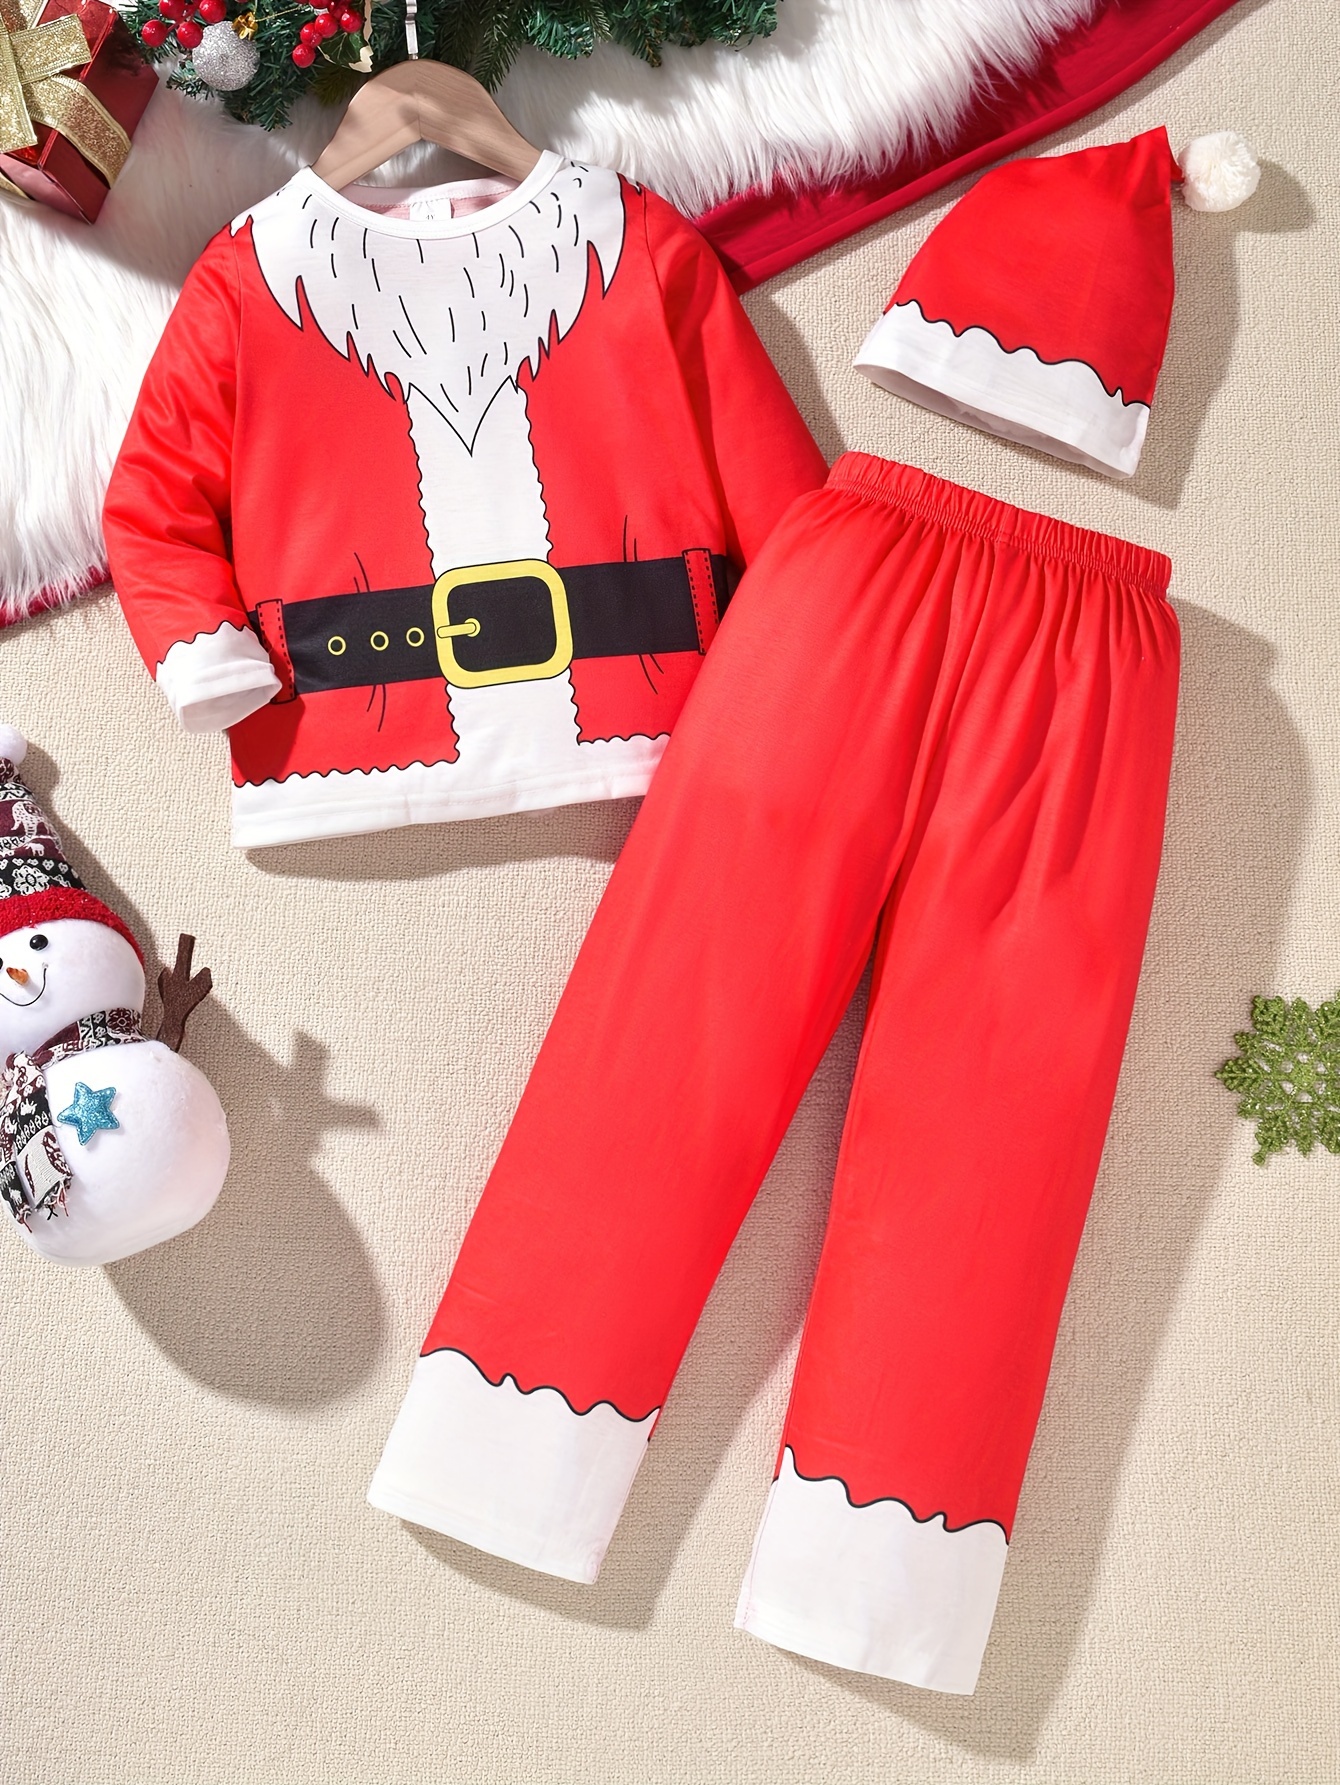 Disfraz De Santa Claus De 3 Piezas, Chaleco + Cinturón + Sombrero,  Accesorios De Cosplay De Navidad, Decoraciones De Fiesta, Accesorios De  Fotografía